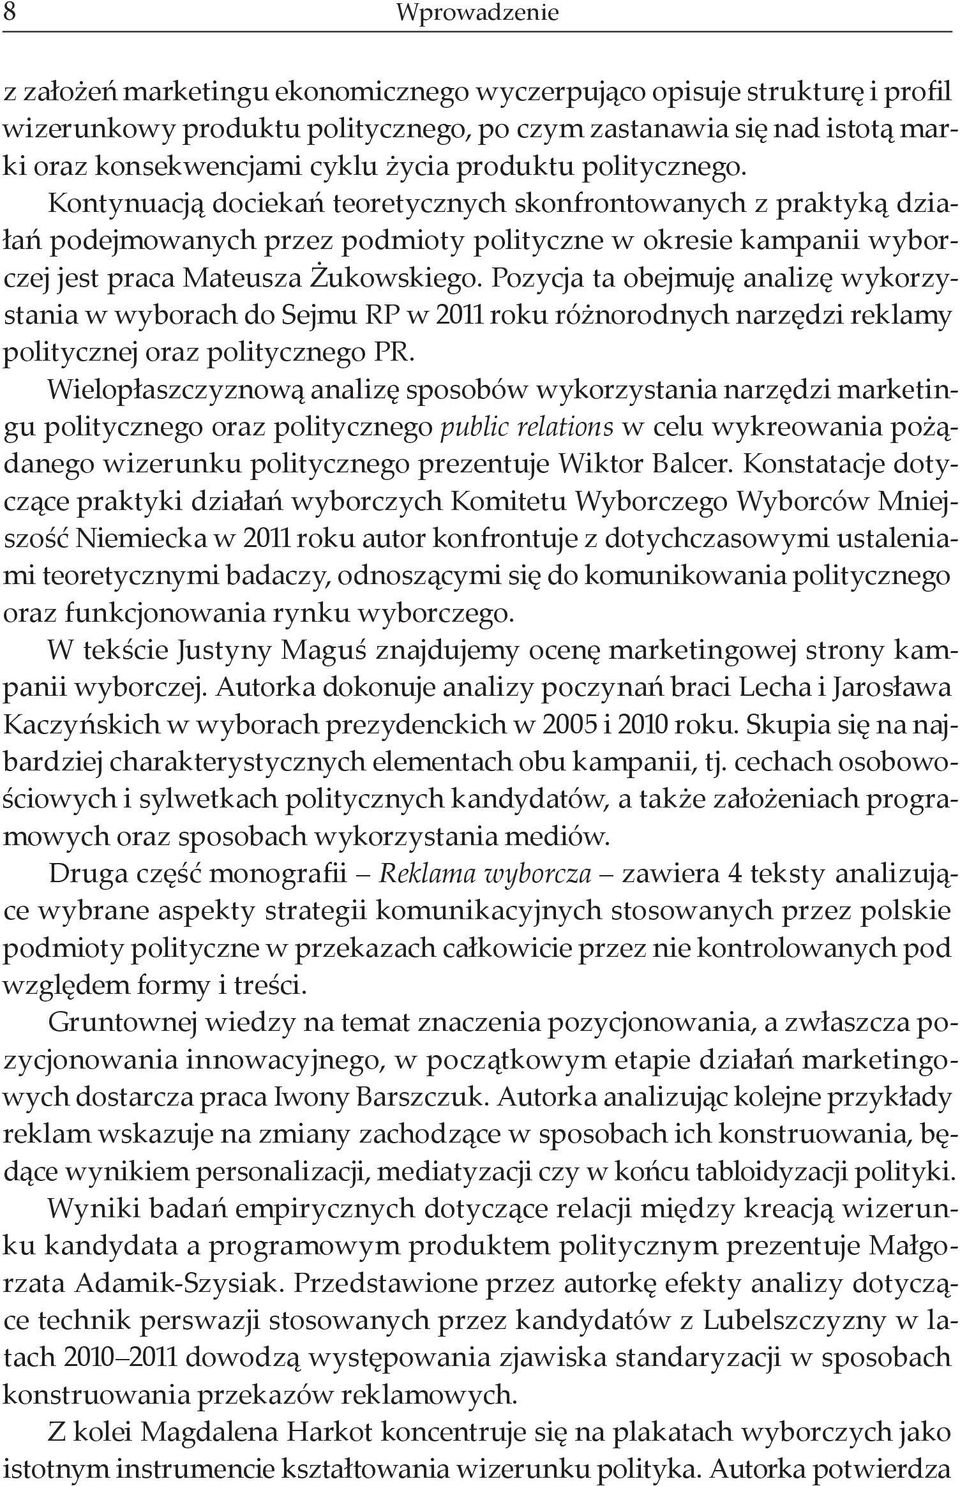 Pozycja ta obejmuję analizę wykorzystania w wyborach do Sejmu RP w 2011 roku różnorodnych narzędzi reklamy politycznej oraz politycznego PR.